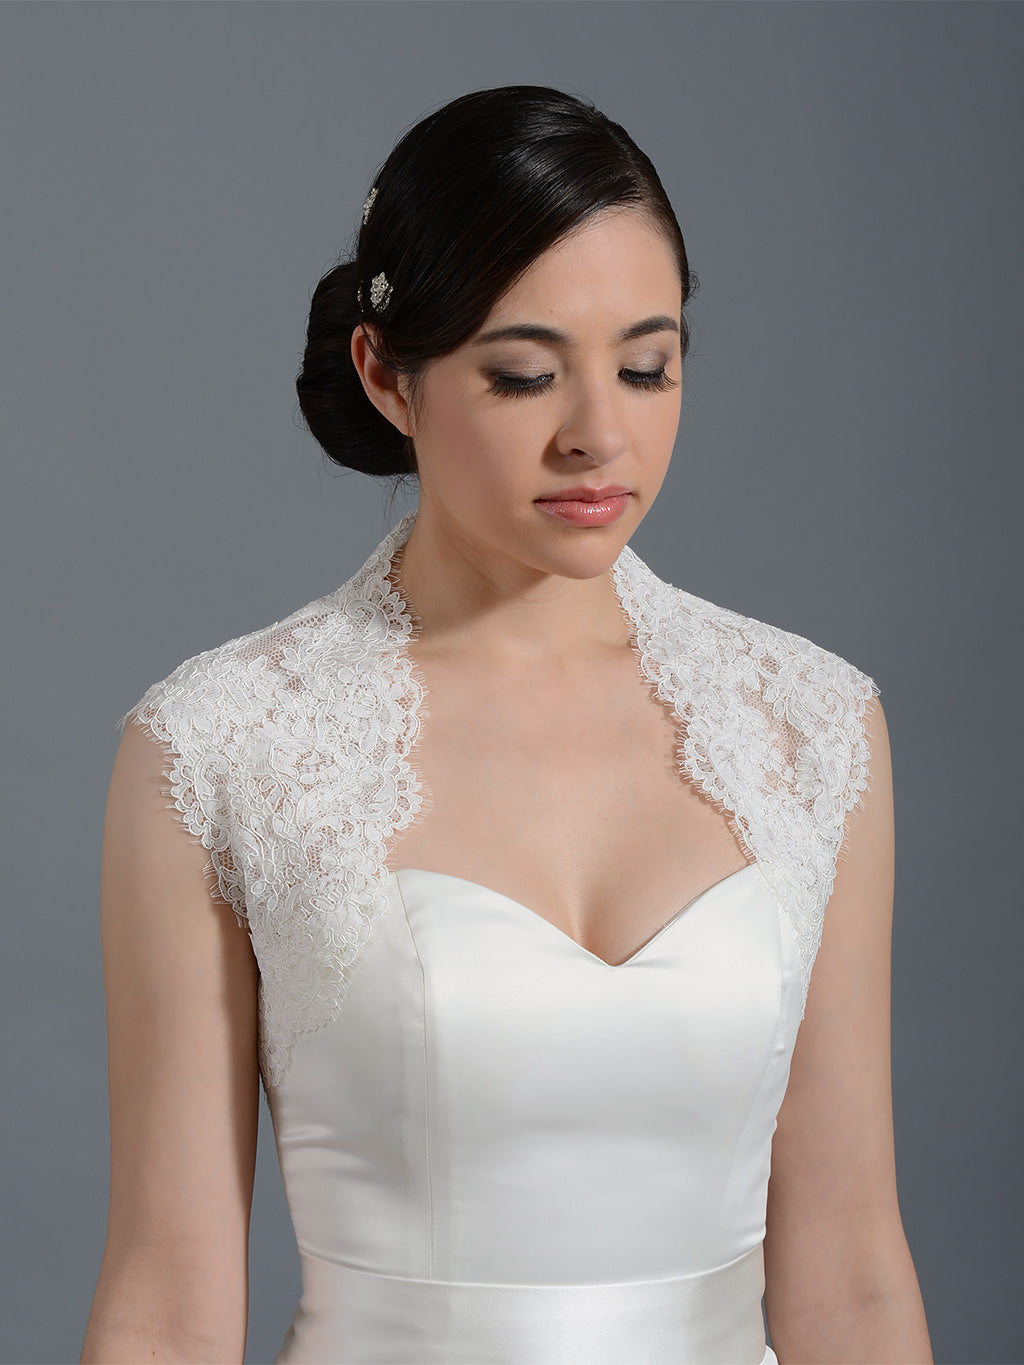 Ivory sleeveless alencon lace bolero wedding bolero jacket